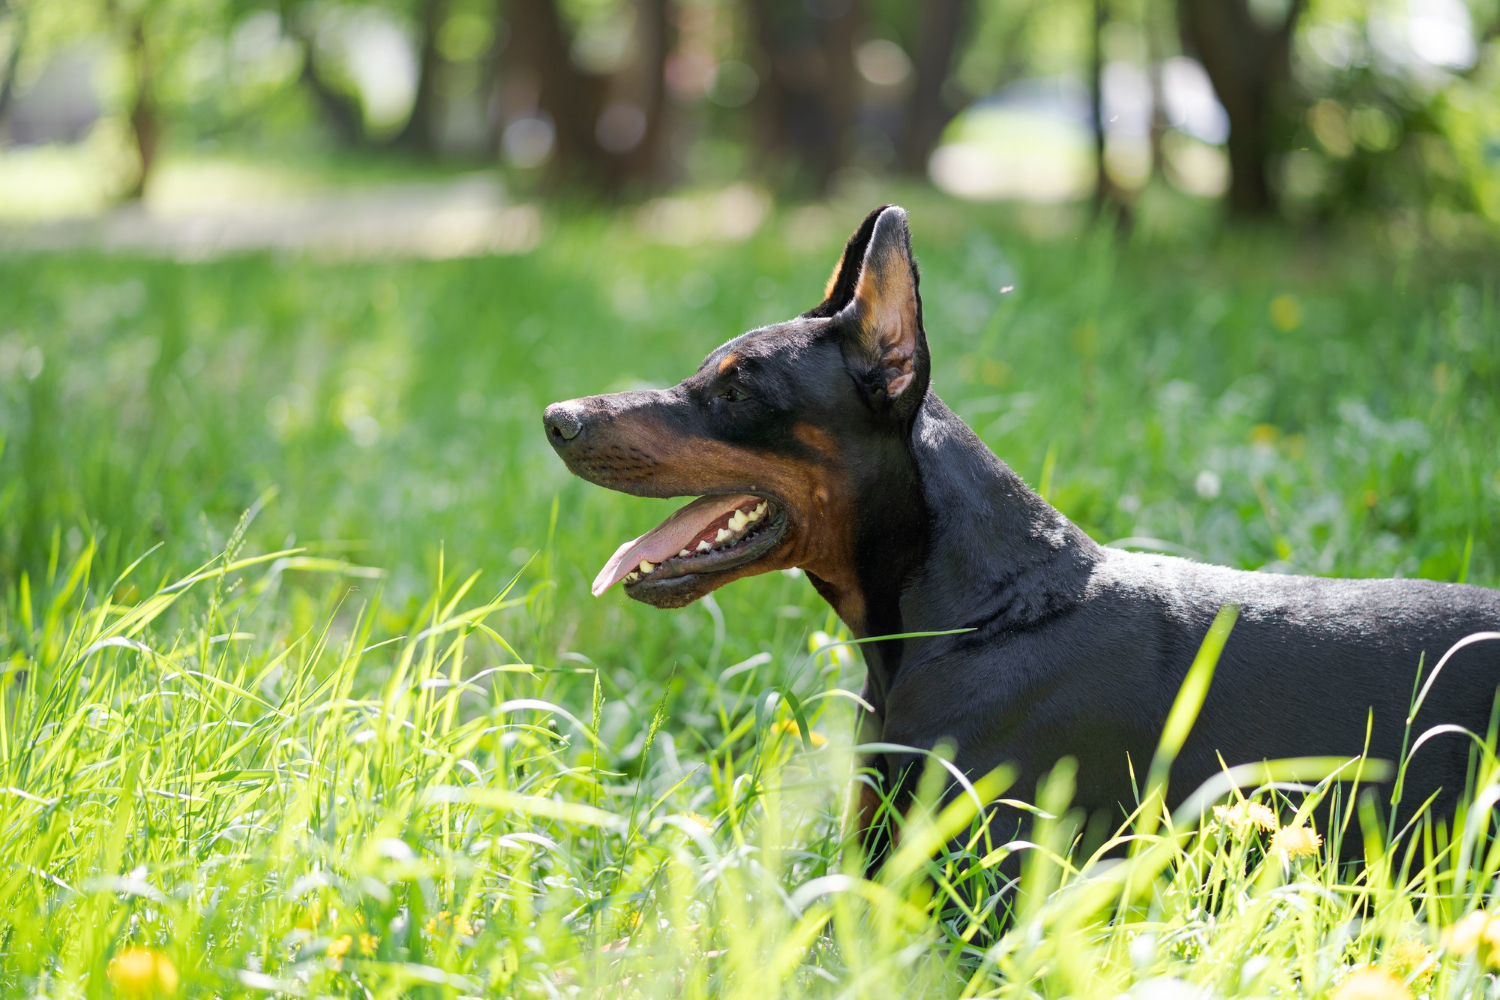 All about doberman pinscher - dog breed